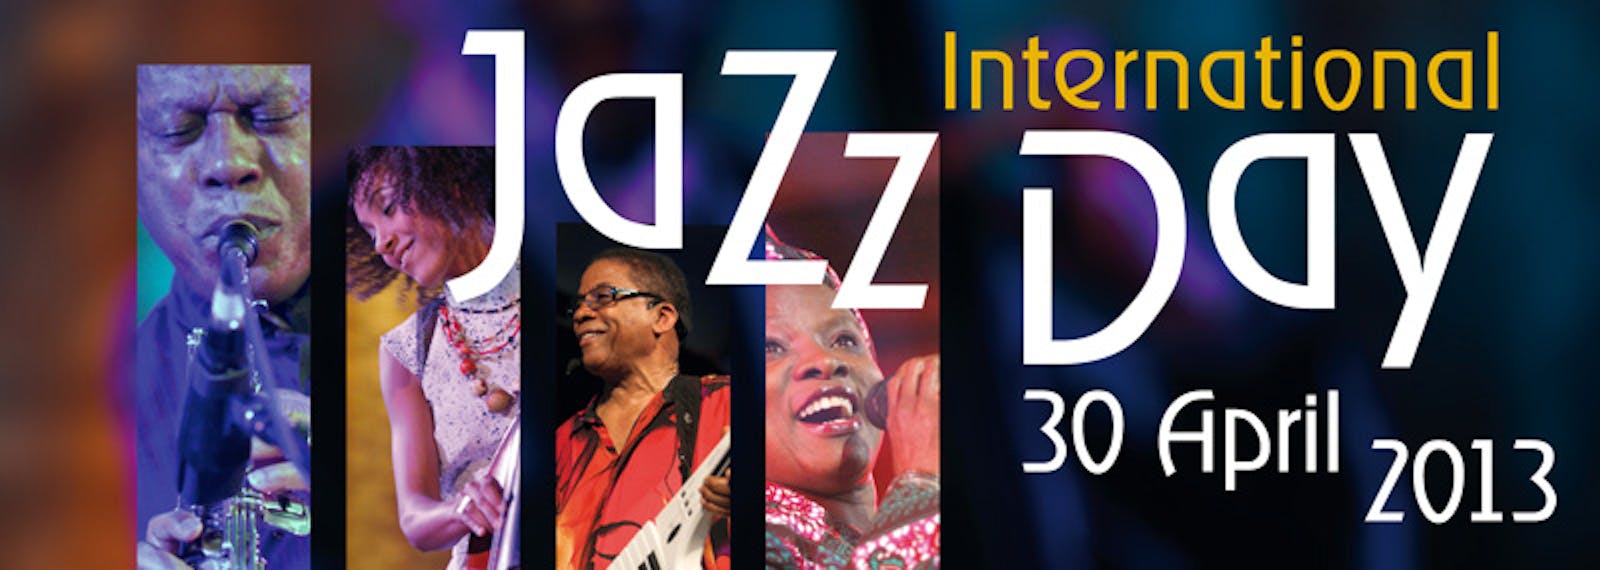 30/4, a Roma l'International Jazz Day è per la Siria